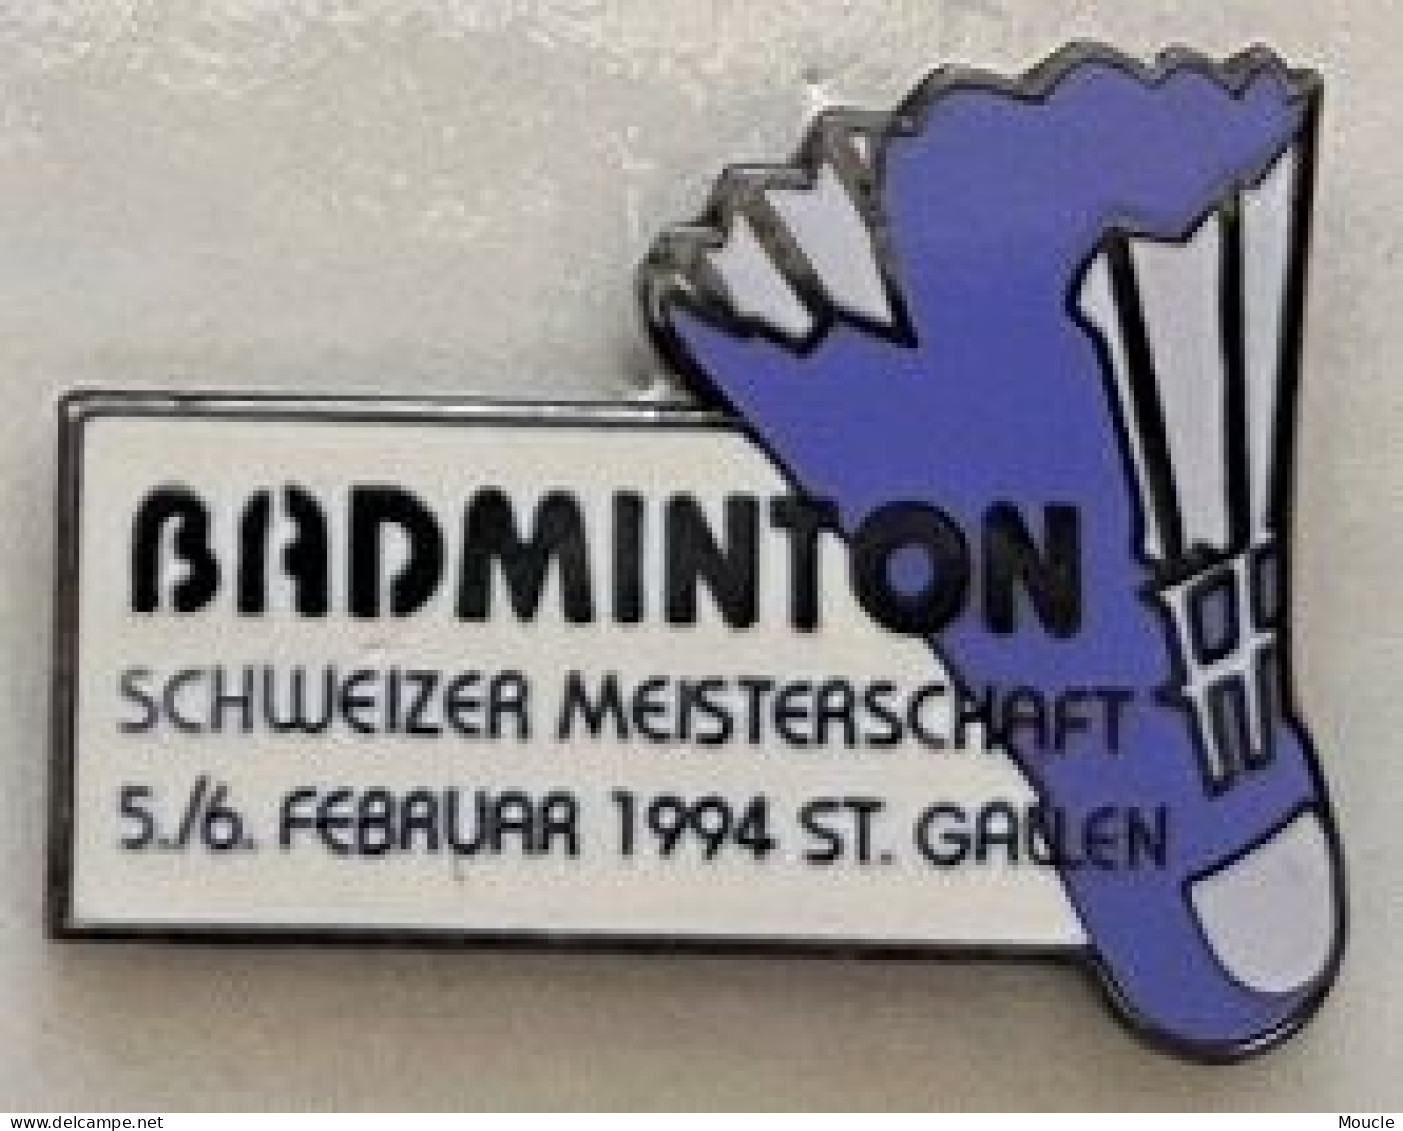 BADMINTON - SCHWEIZER MEISTERSCHAFT - 1994 - CHAMPIONNAT SUISSE 94 - SCHWEIZ - SWITERLAND - VOLANT - ST GALLEN - (ROSE) - Badminton